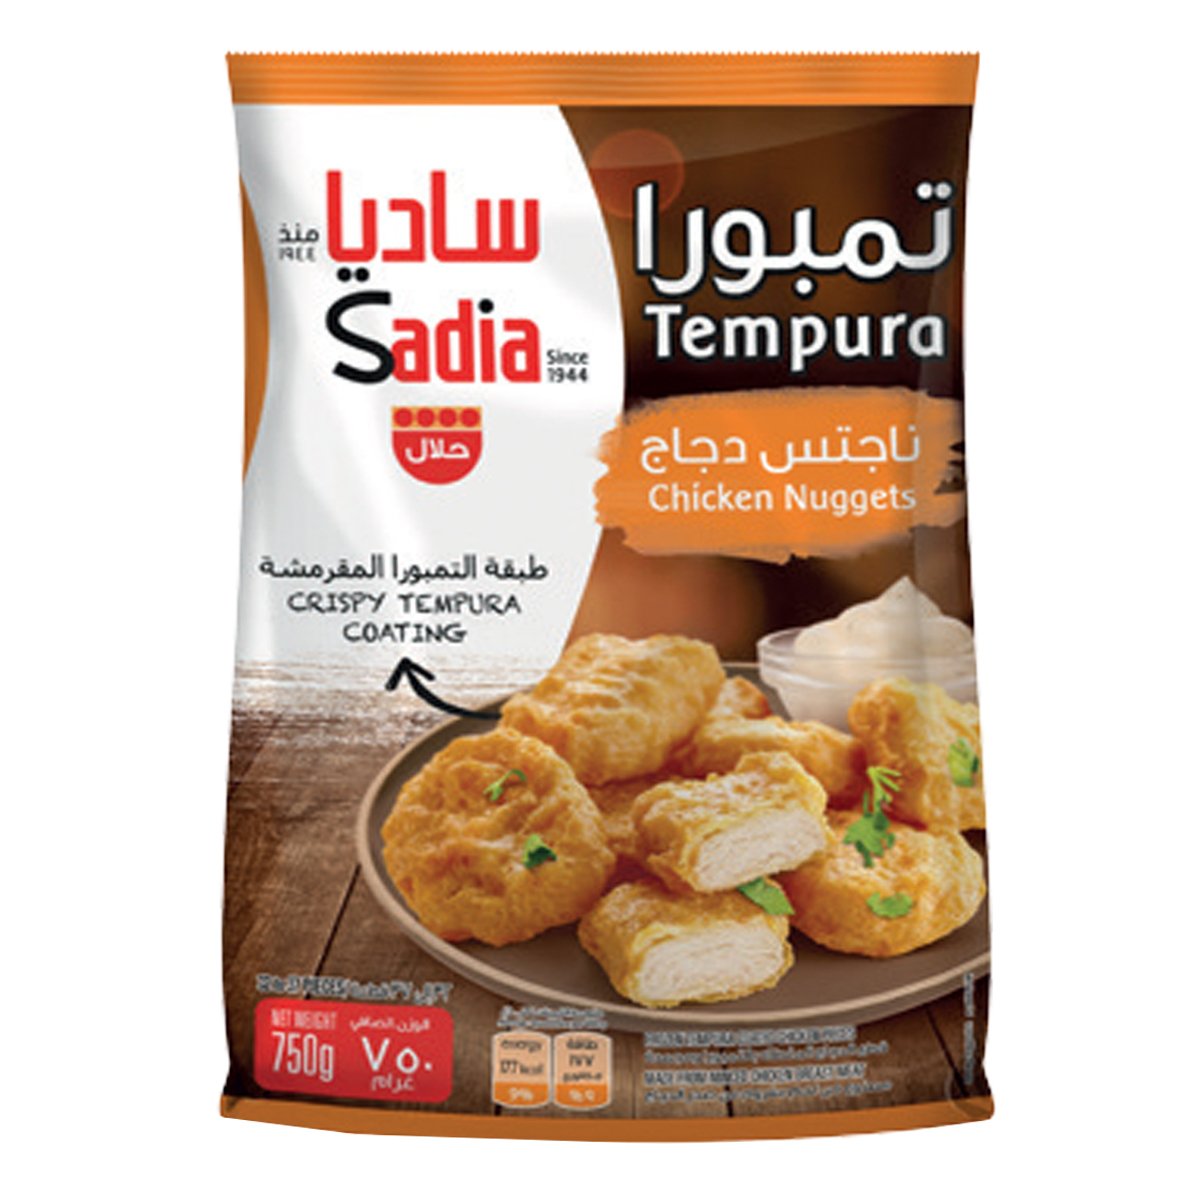 Buy Sadia Tempura Chicken Nuggets 750 g Online at Best Price | Nuggets | Lulu KSA in UAE